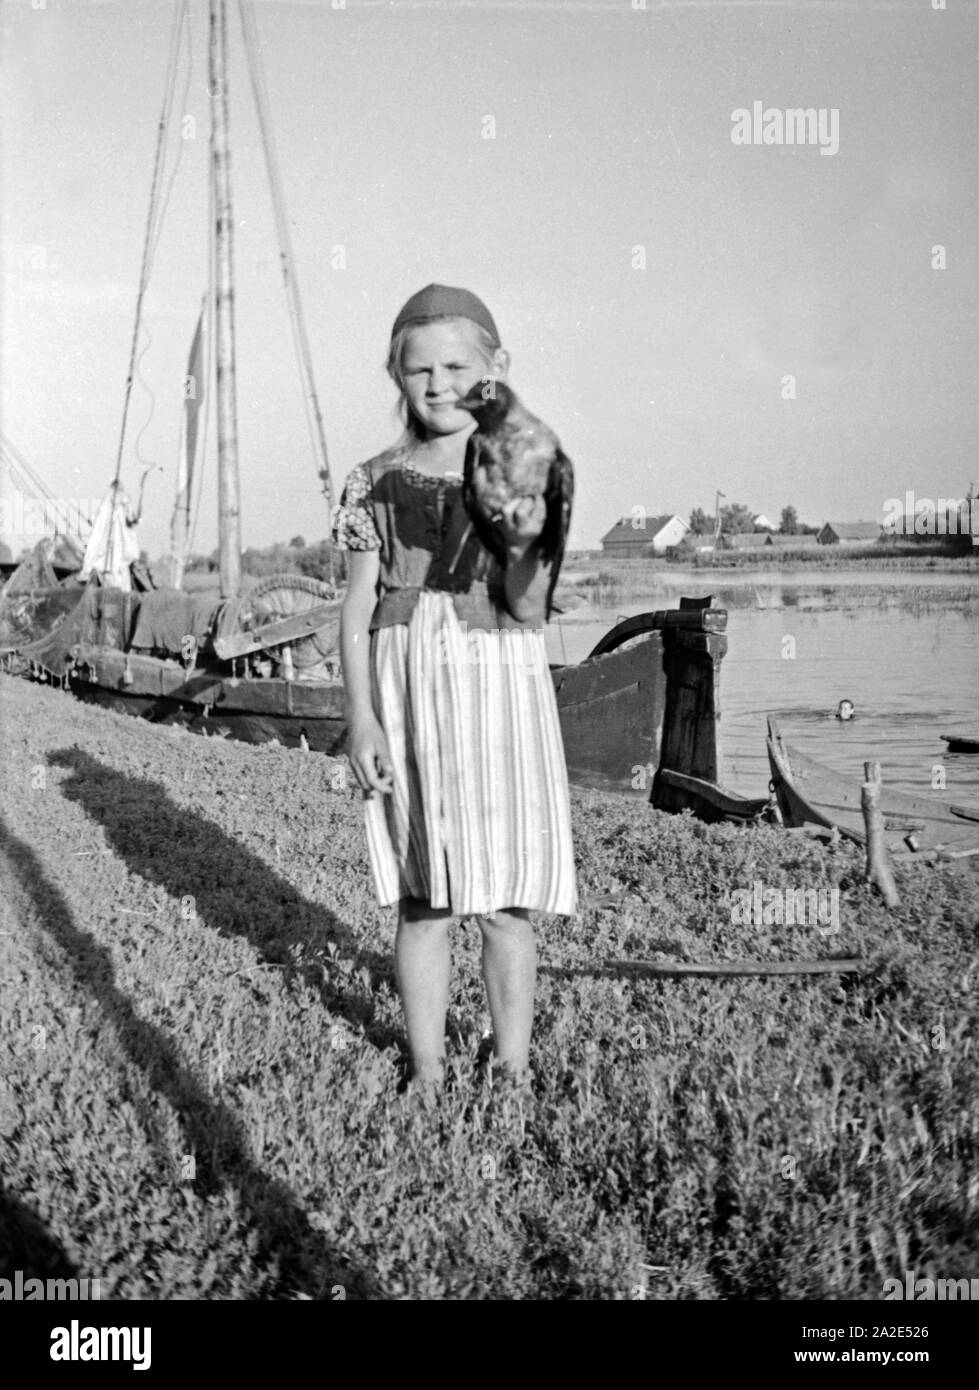 Ein kleines Mädchen hält einen Vogel in der Hand im Memeldelta, Ostpreußen, 1930er Jahre. A little girl with a bird in her hand in the Memel delta, East Prussia, 1930s. Stock Photo